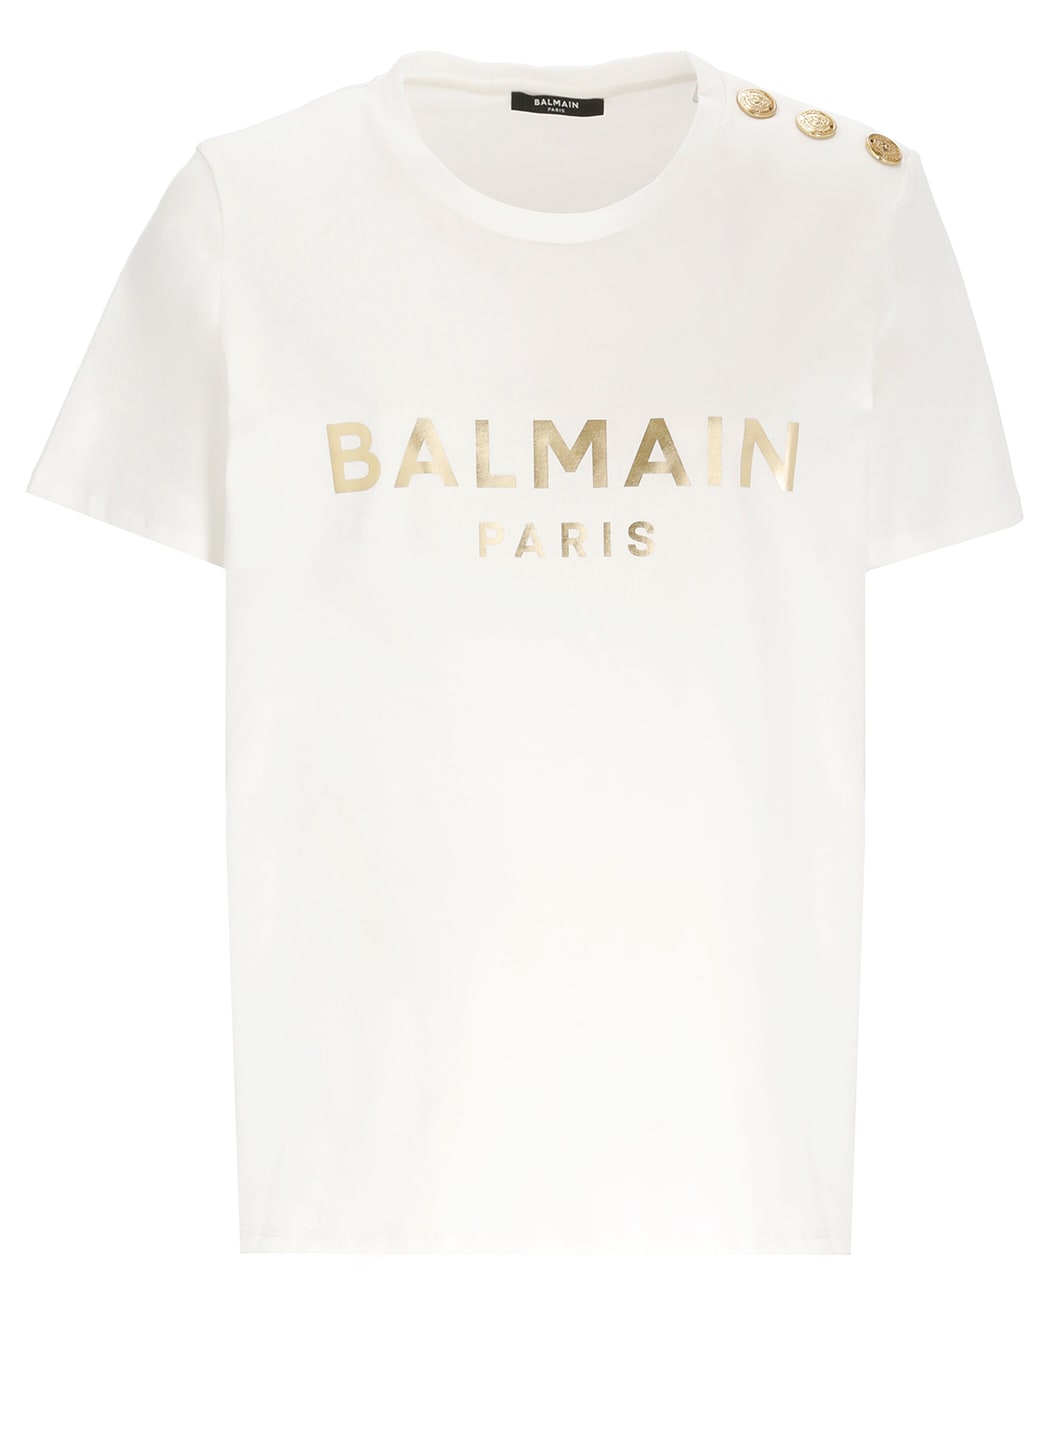 Balmain T-shirt With Print